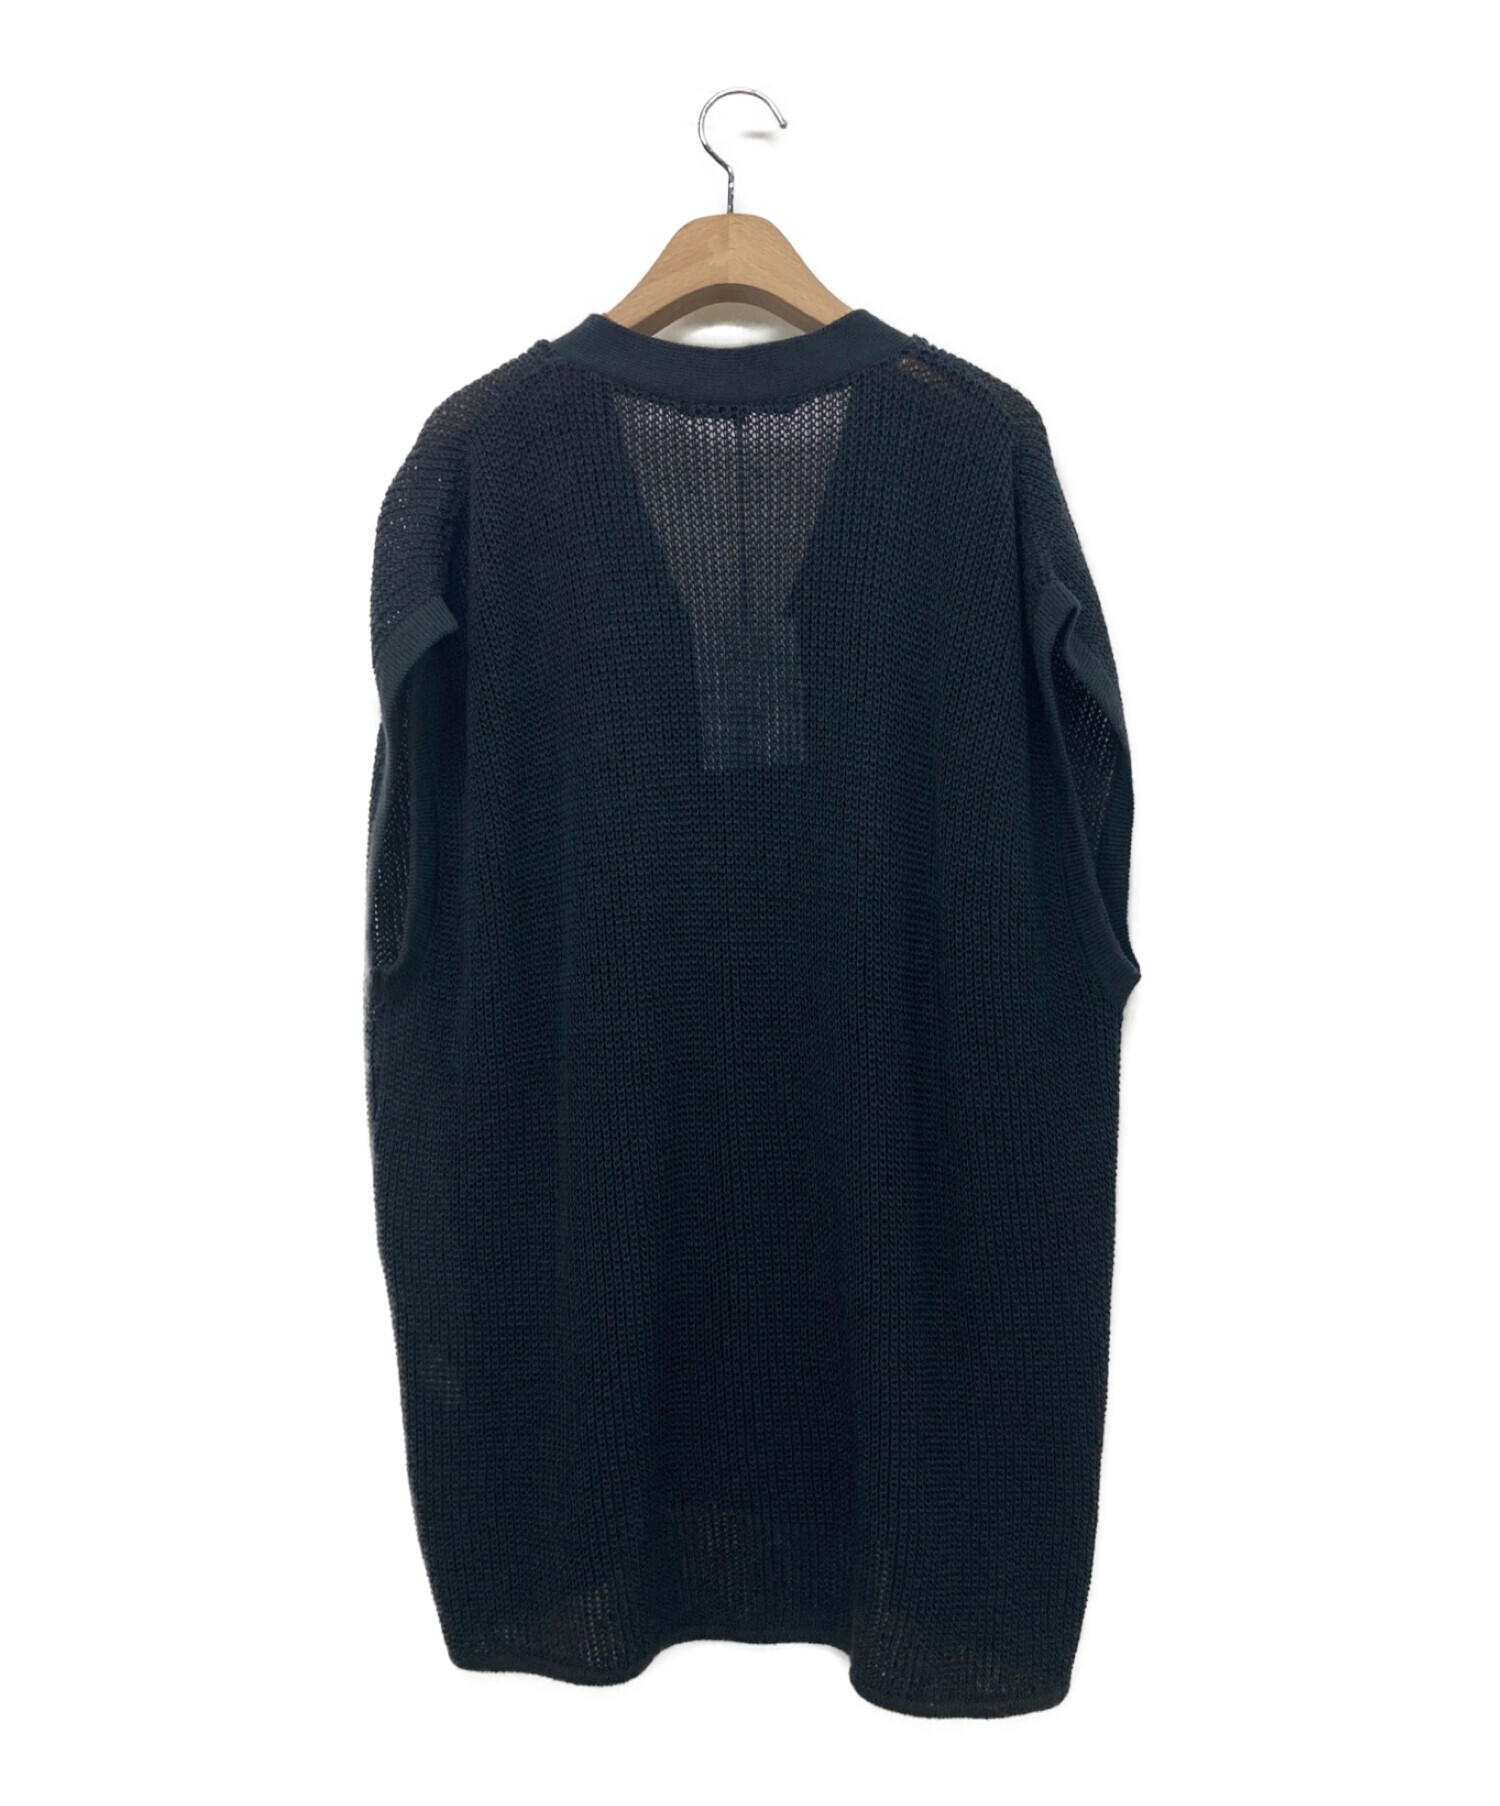 08sircus (ゼロエイトサーカス) Wool / paper yarn sleeveless cardigan ブラック サイズ:5